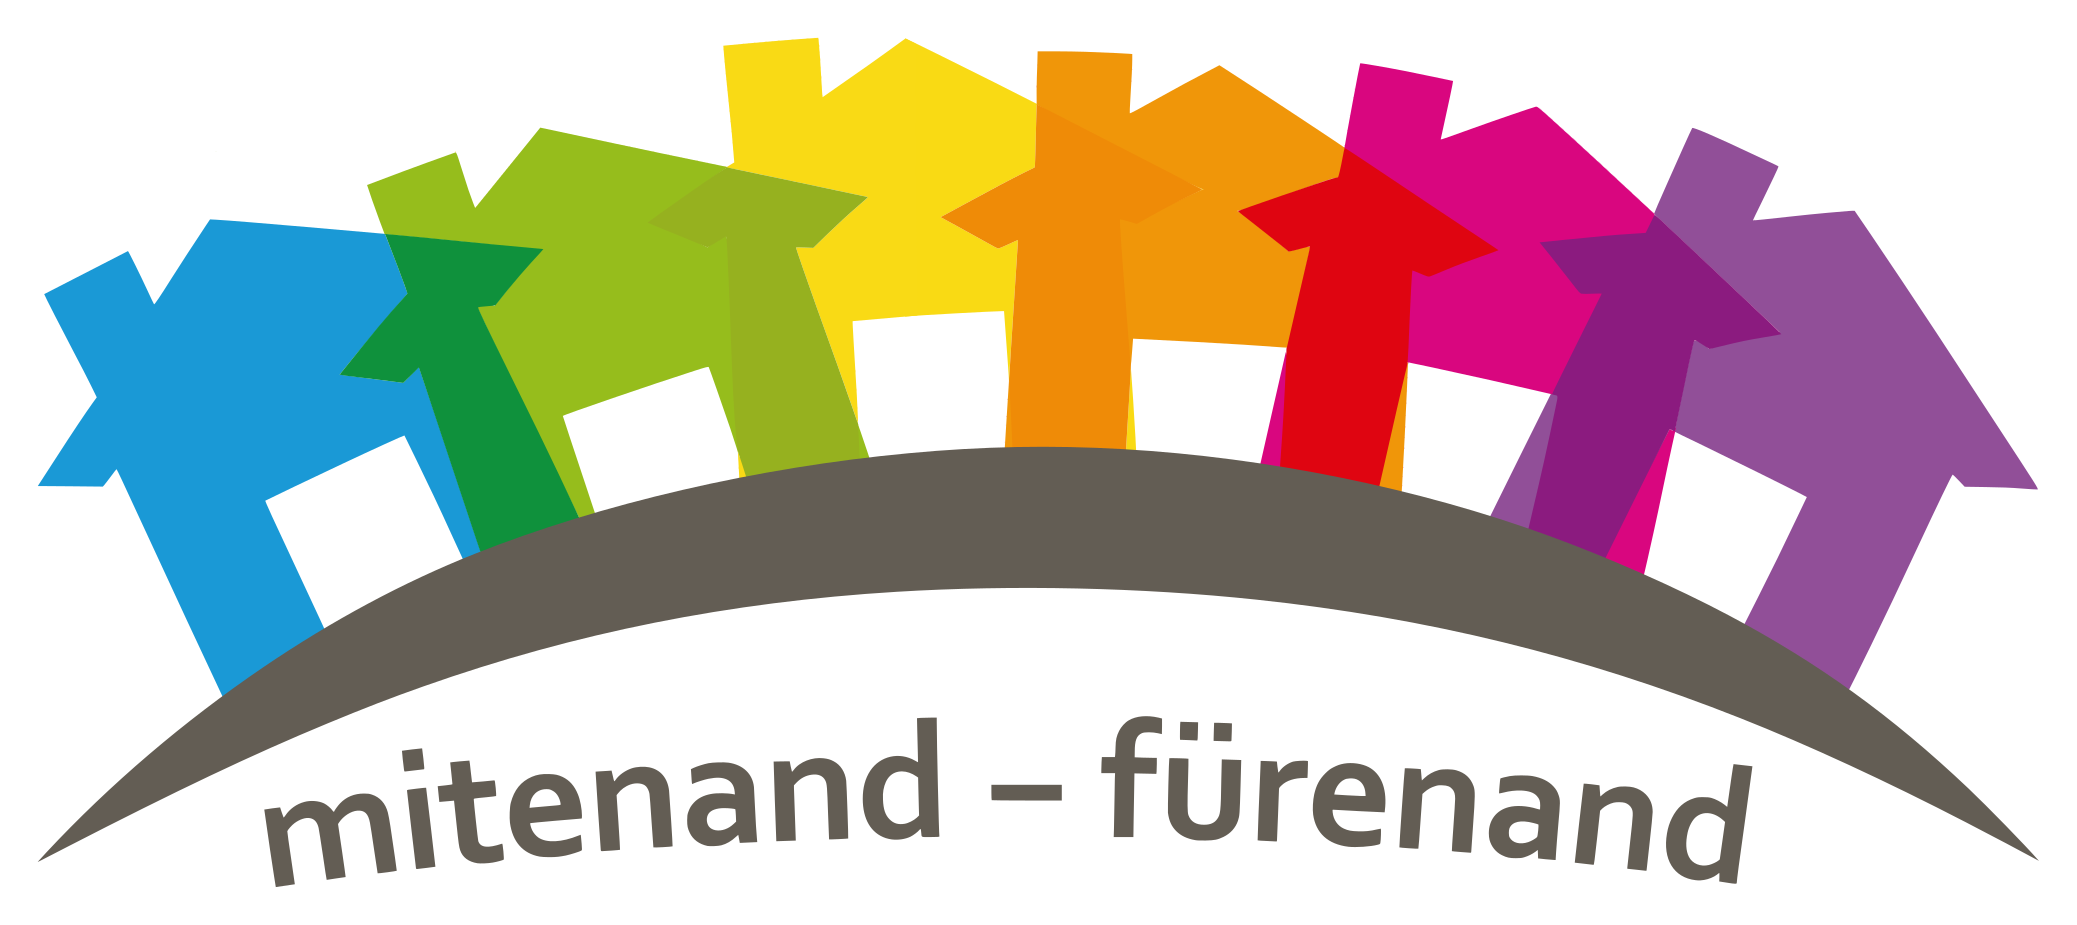 Logo der Nachbarschaftshilfen Frauenfeld (farbige Häuser) mit Leitspruch "mitenand - fürenand"